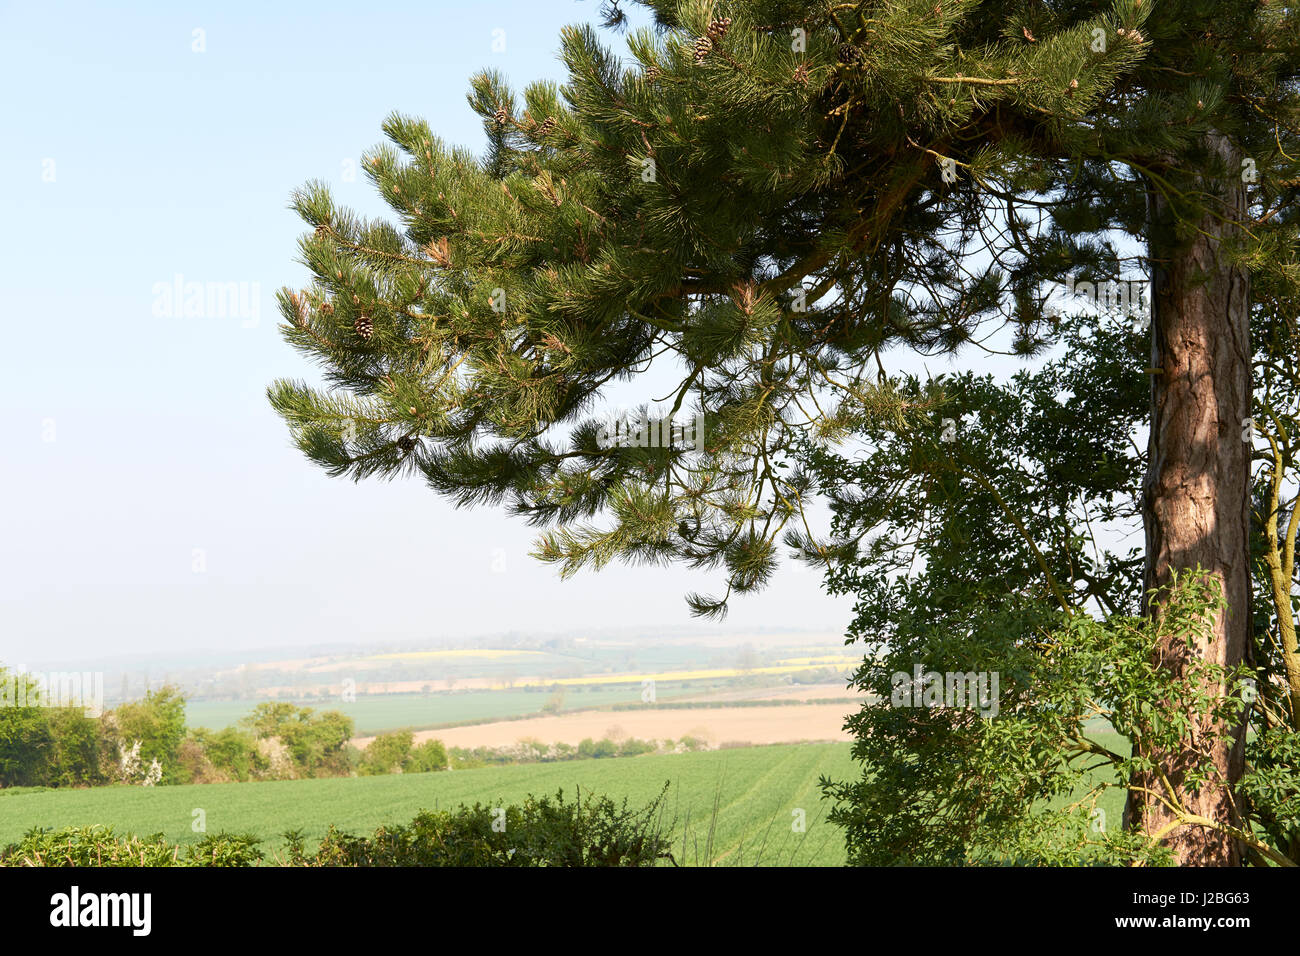 Un pin sylvestre (Pinus sylvestris) arbre avec des pommes de pin, les terres agricoles ouvertes et vue sur la campagne dans l'arrière-plan. Bedfordshire, Royaume-Uni. Banque D'Images